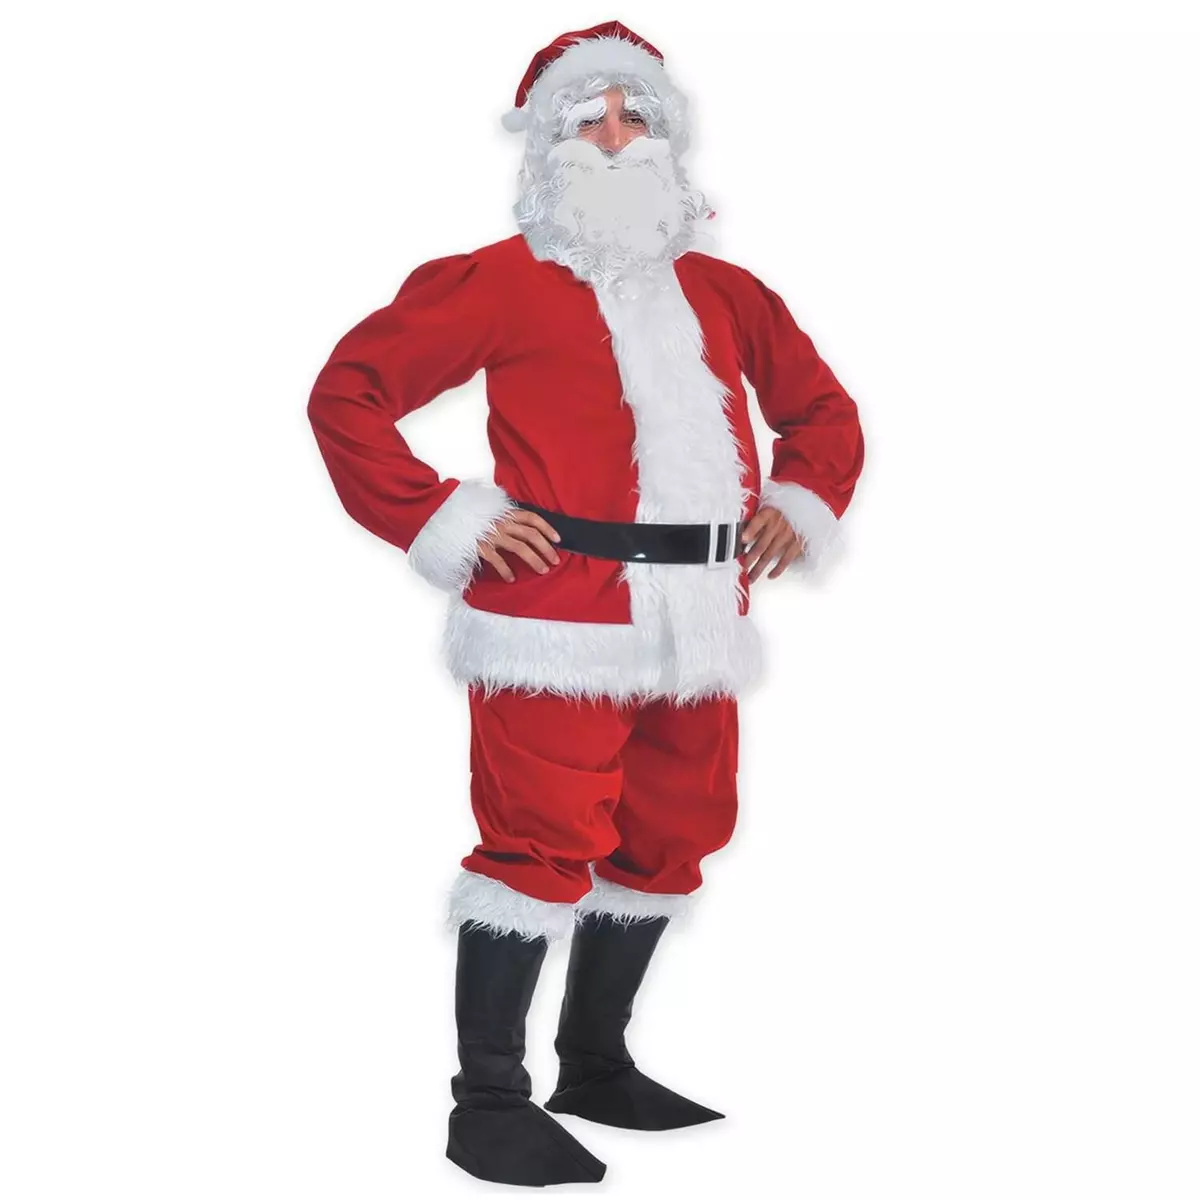  Costume Père Noël Qualité professionnelle - Homme - L/XL